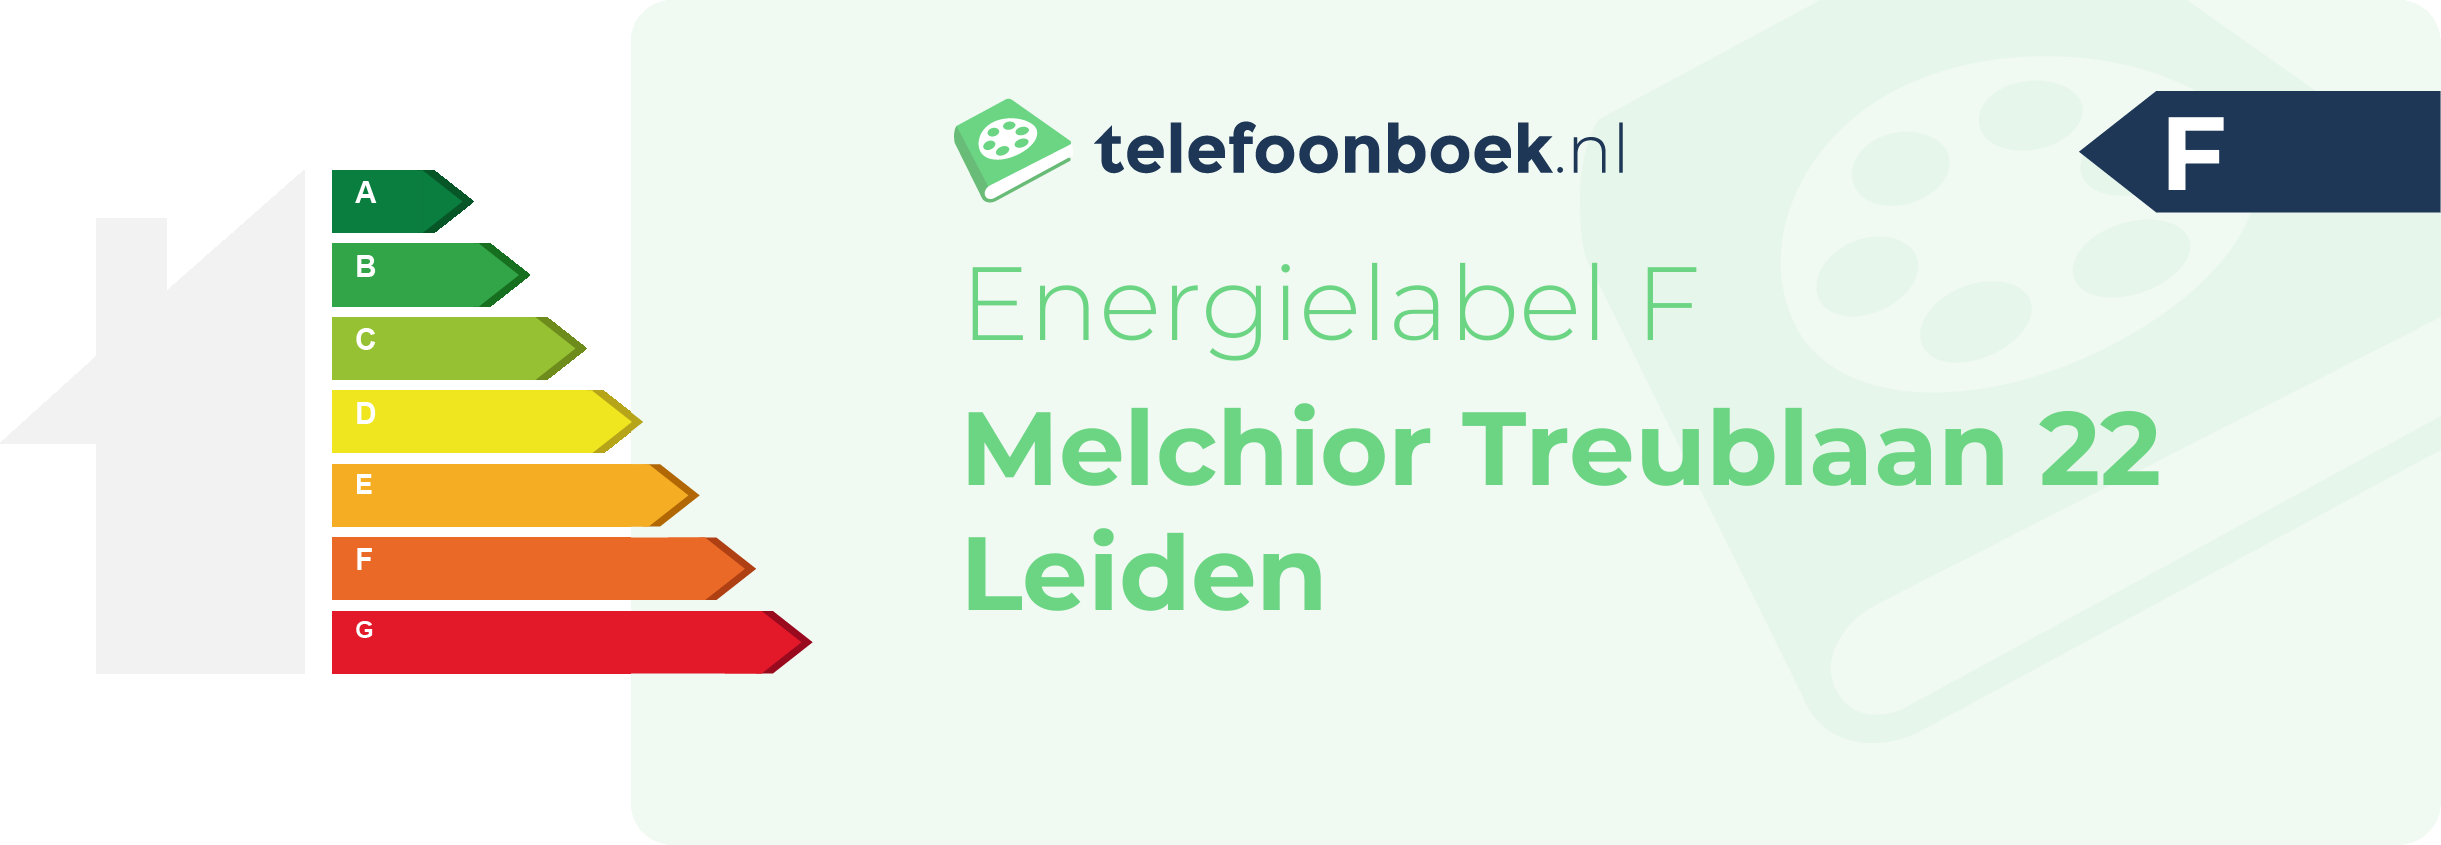 Energielabel Melchior Treublaan 22 Leiden